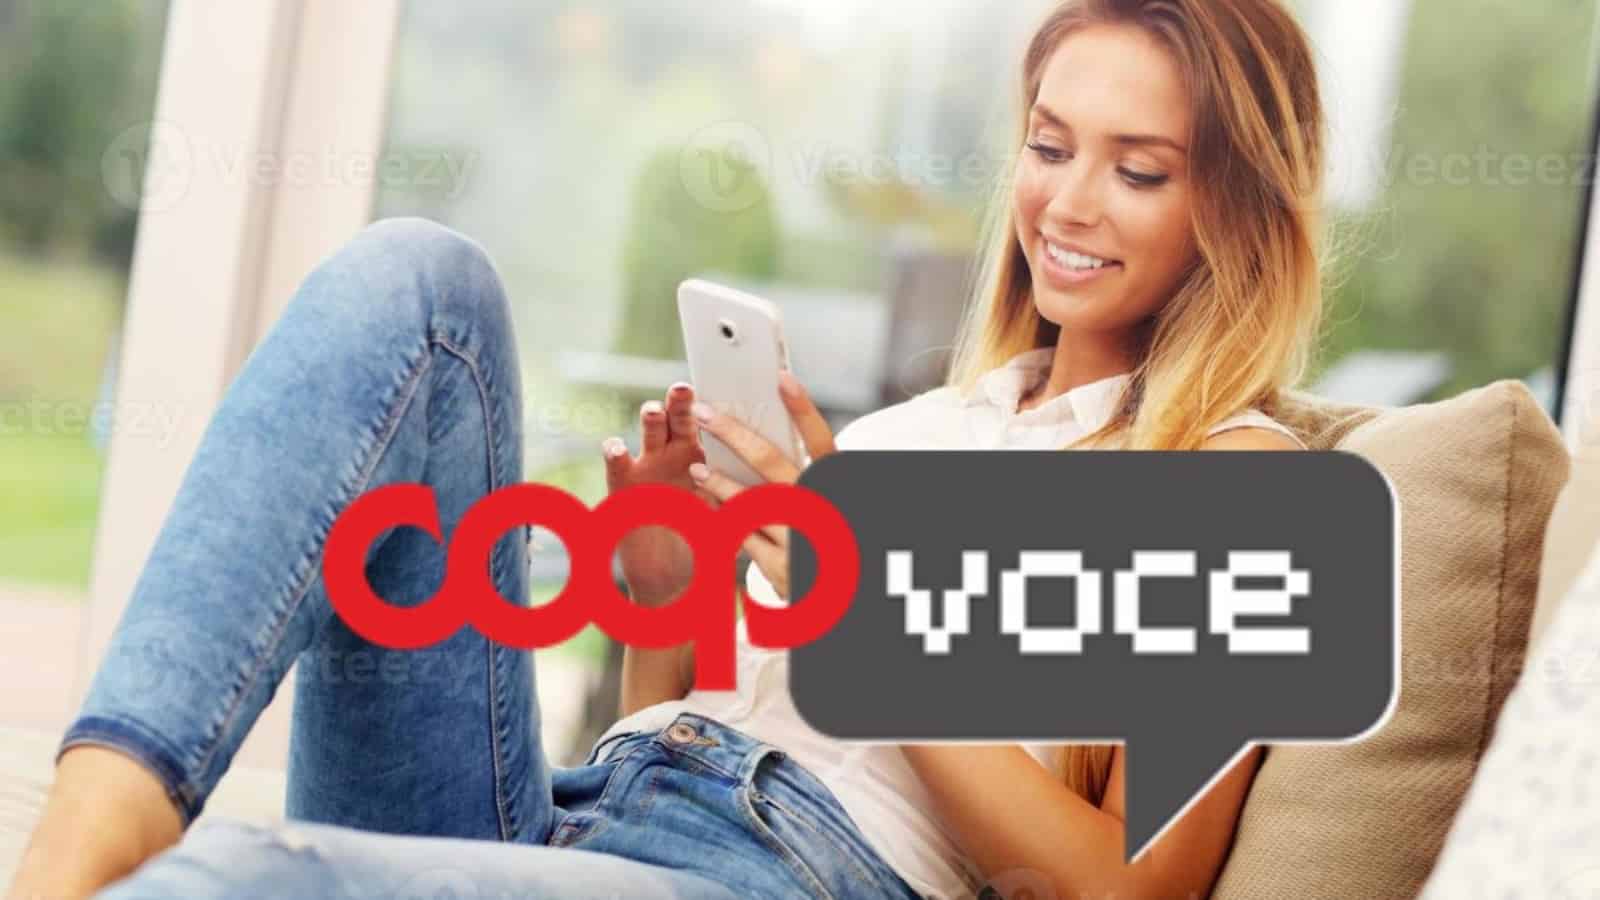 CoopVoce contro Vodafone e Iliad: la EVO 10 batte tutti e costa 4 EURO